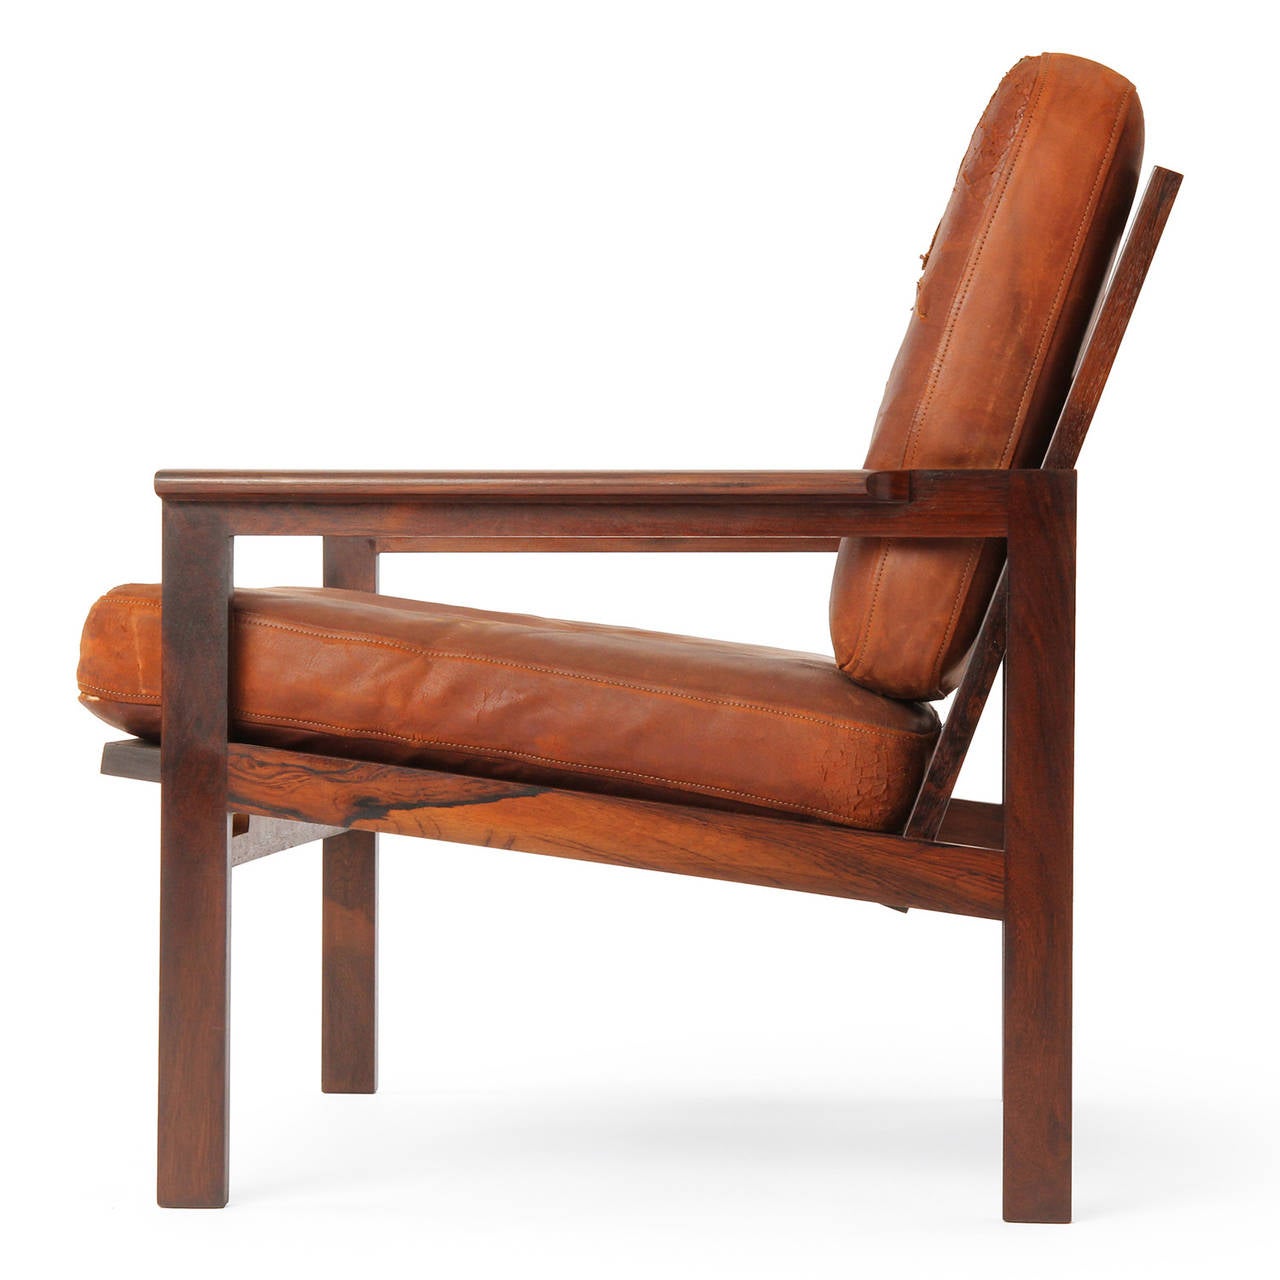 Ce fauteuil rectiligne de style scandinave moderne, conçu par Illum Wikkelso, présente un cadre en bois de rose massif apparent, de larges accoudoirs aplatis et des coussins en cuir naturel à la patine magnifique. Fabriqué par l'ébéniste Neils